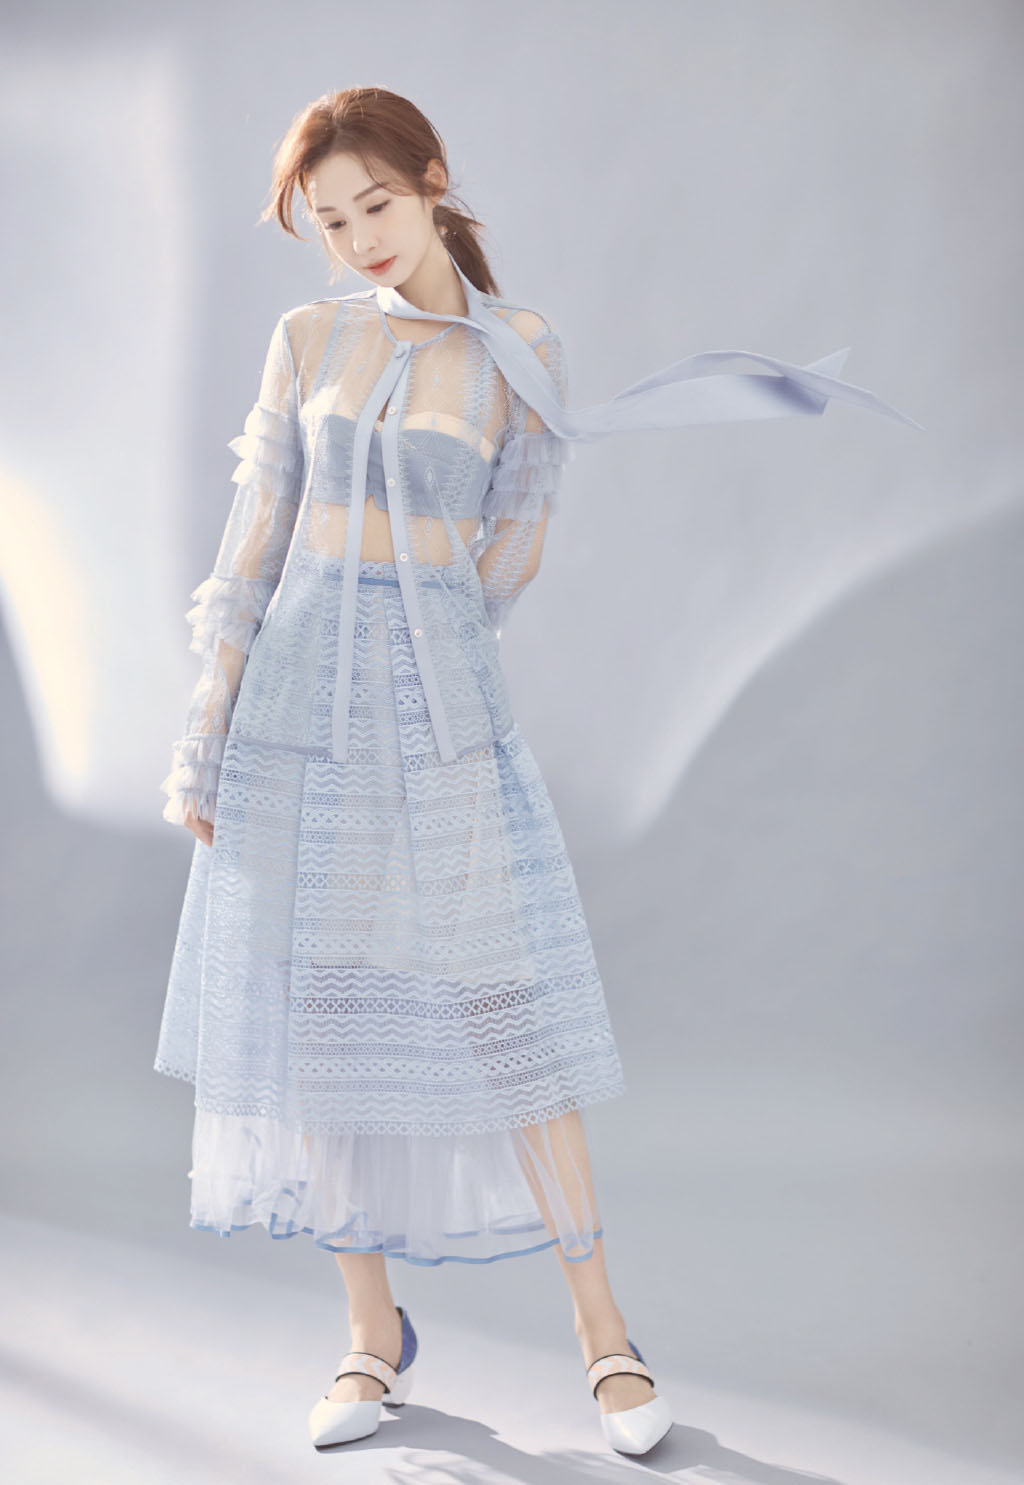 郑合惠子蓝色清爽透明长裙美丽仙气写真照片